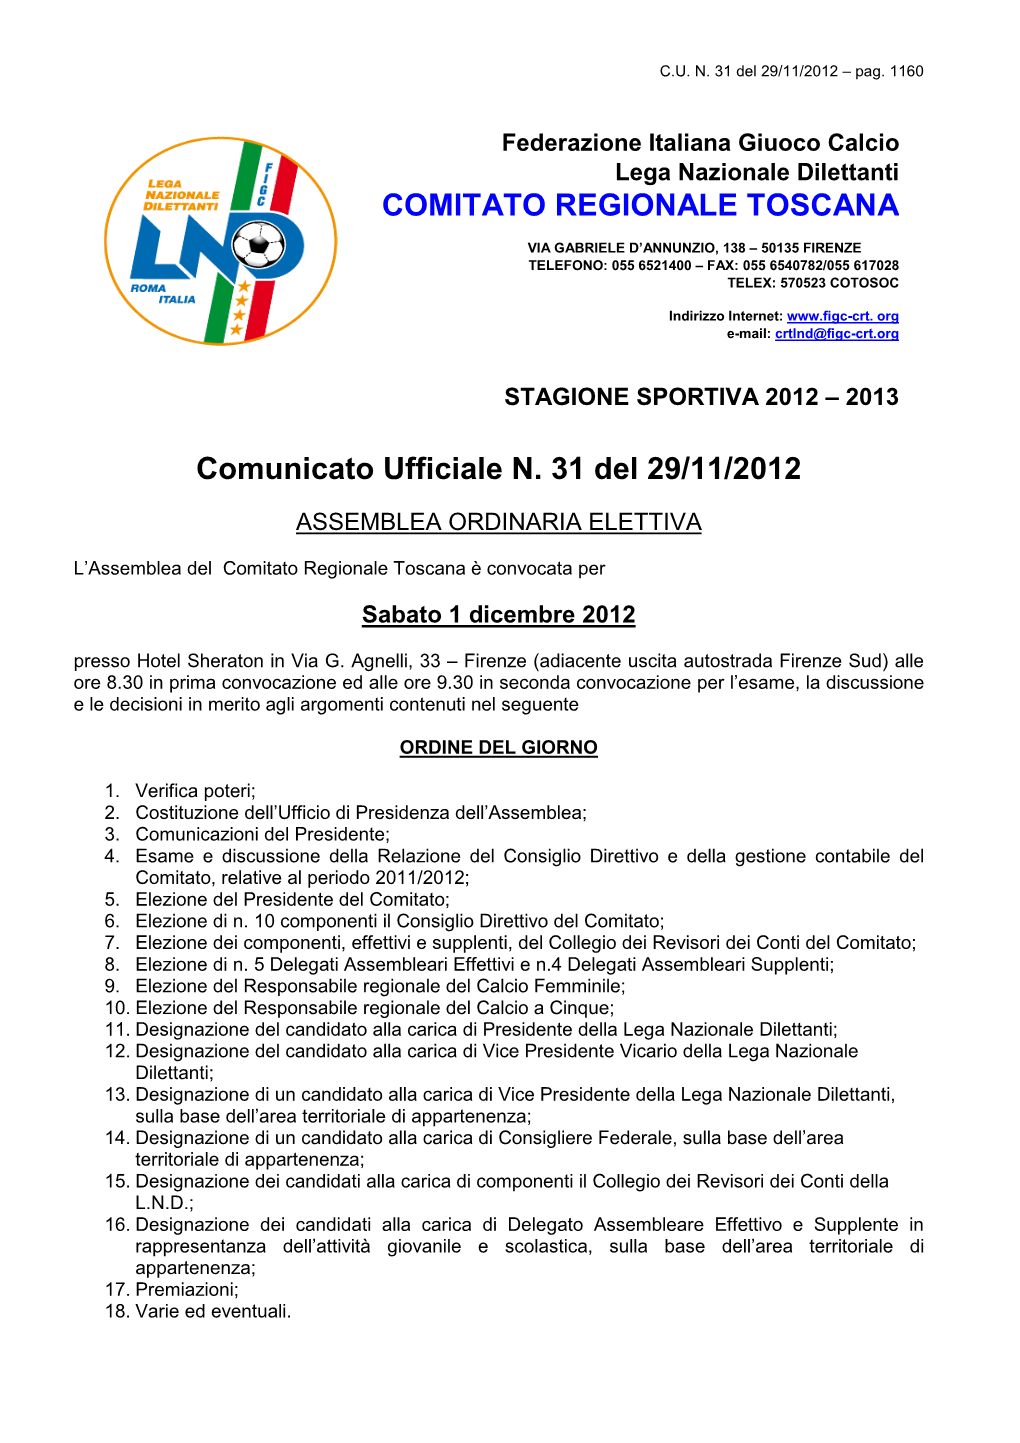 Comunicato Ufficiale N. 31 Del 29/11/2012 COMITATO REGIONALE TOSCANA